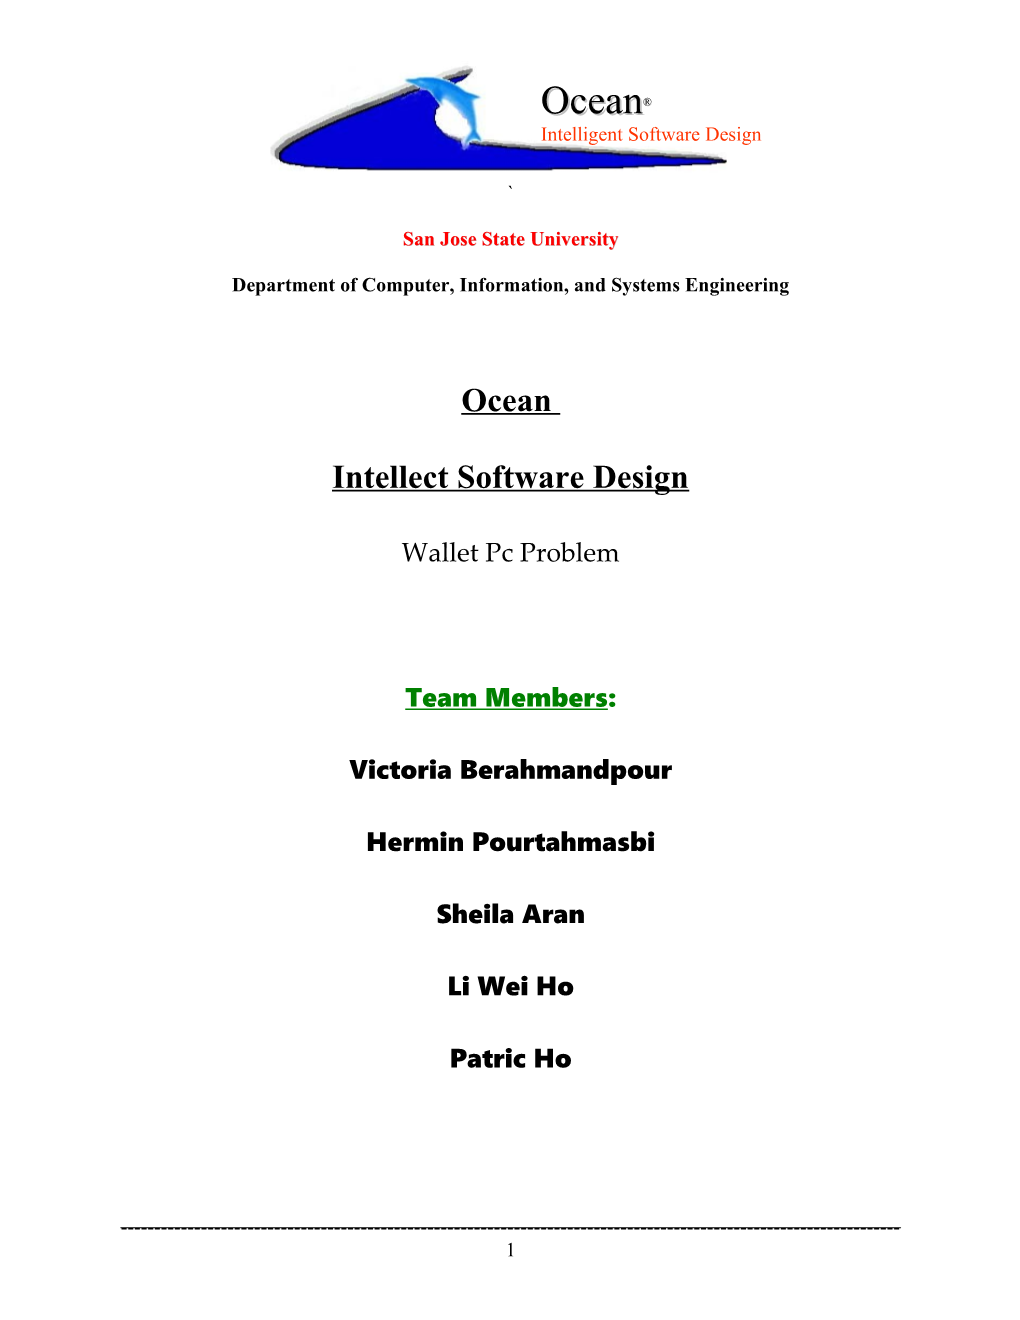 Intellect Software Design